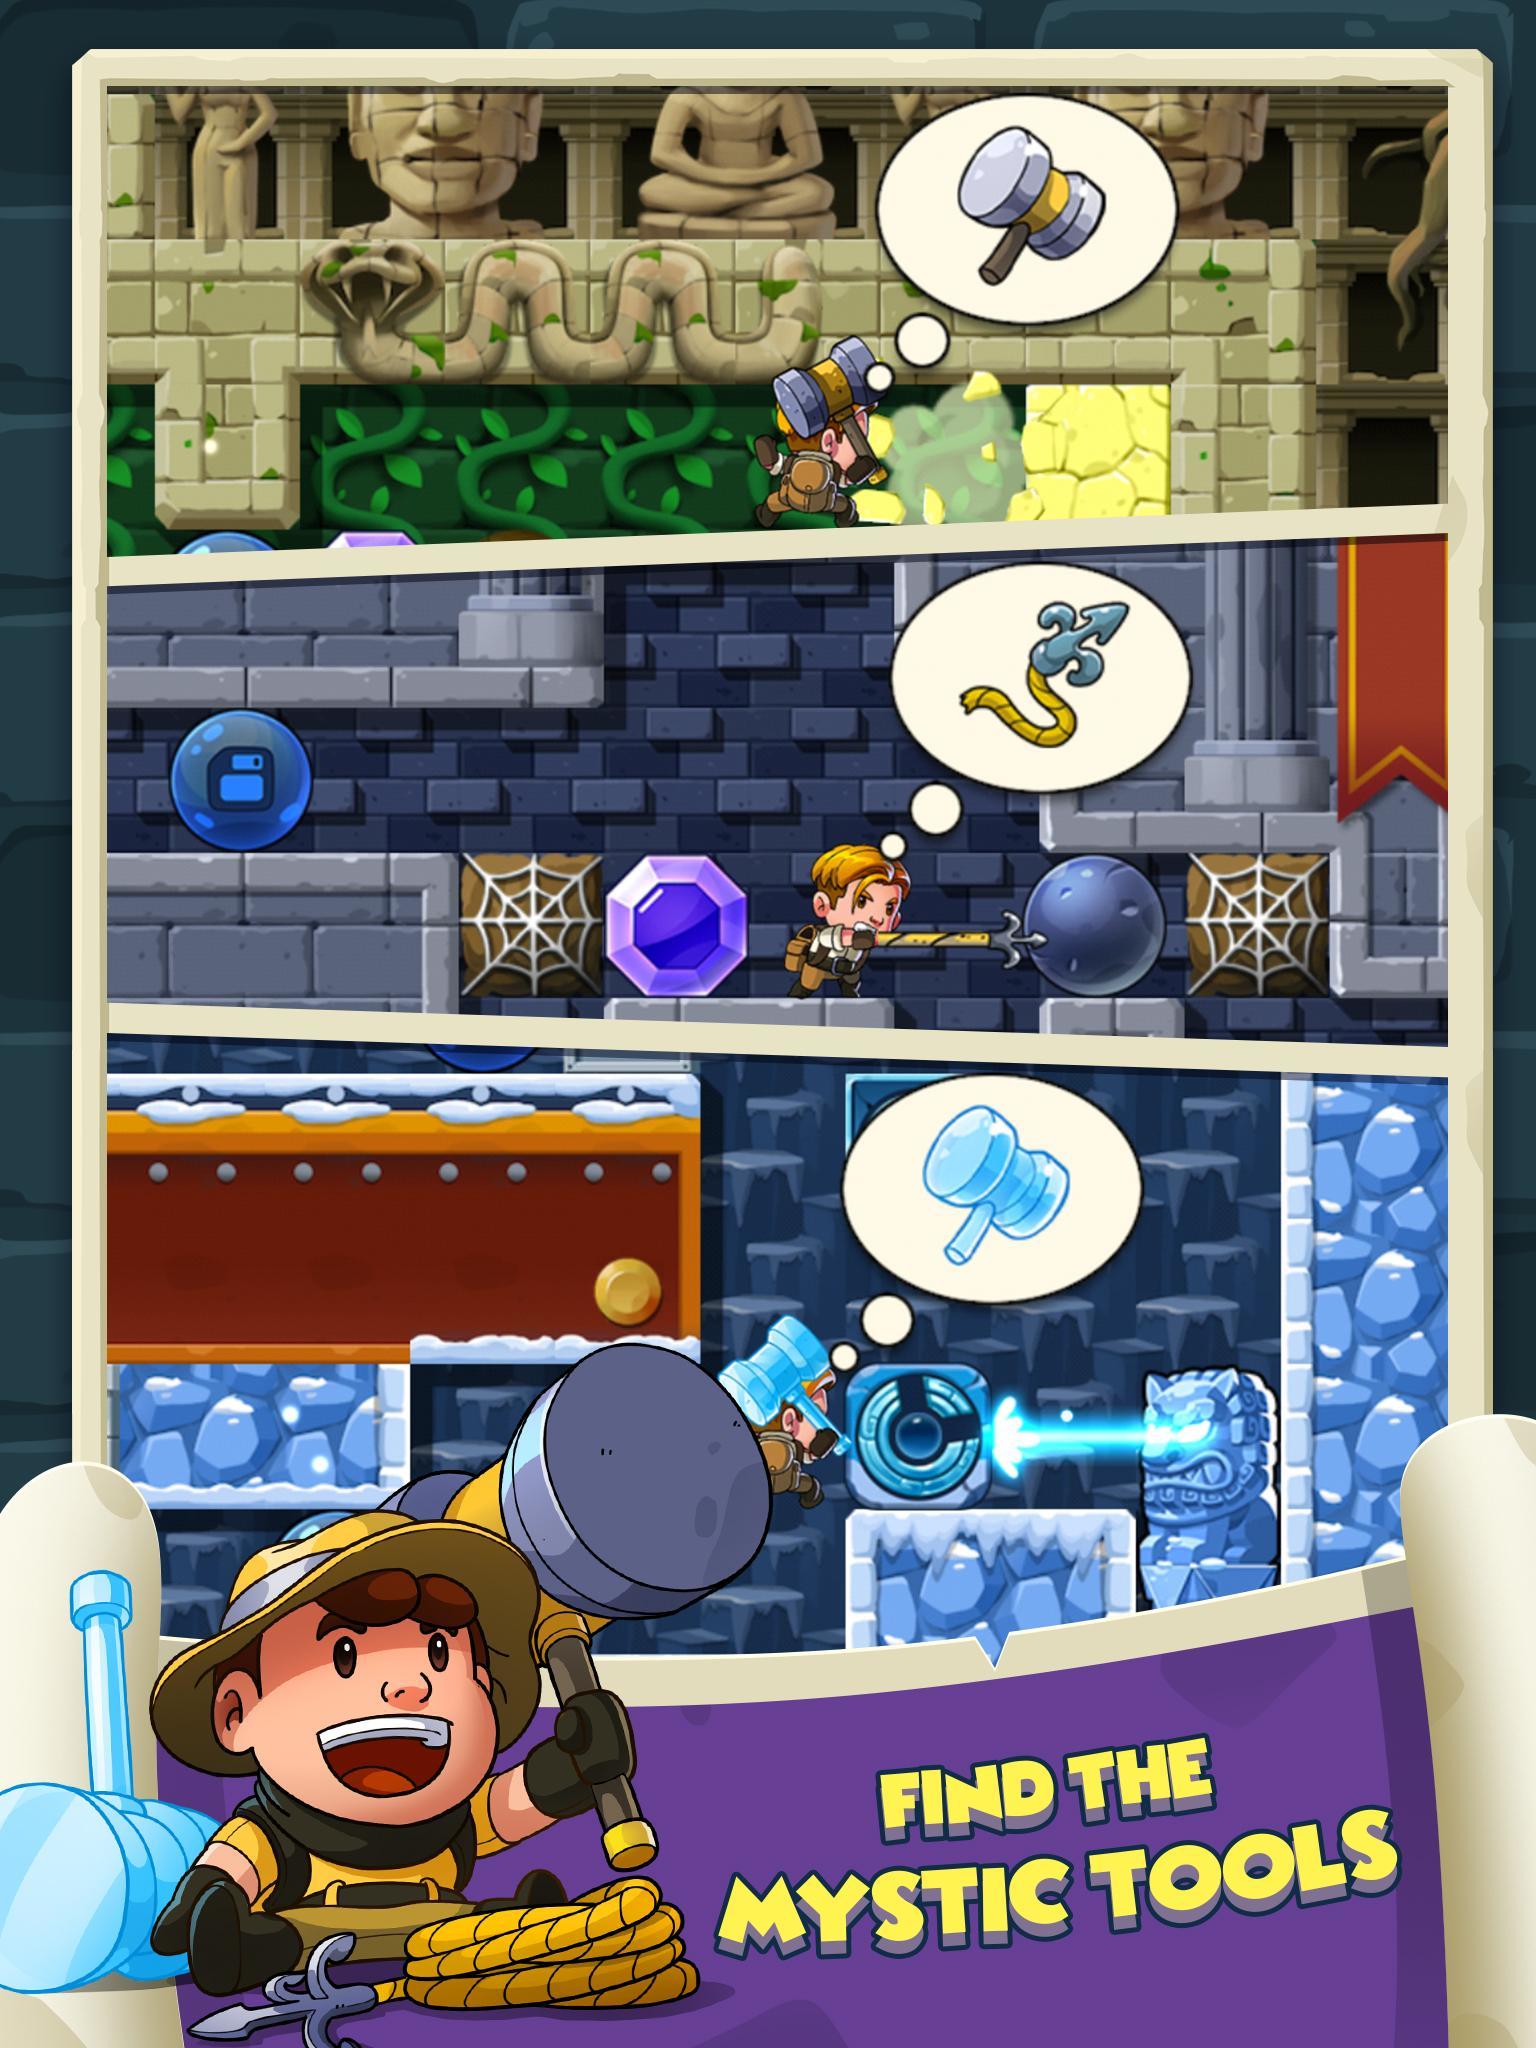 Troll Face Quest Horror: Todos os níveis do 1 ao 17 - Gameplay passo a  passo (Android/IOS) 